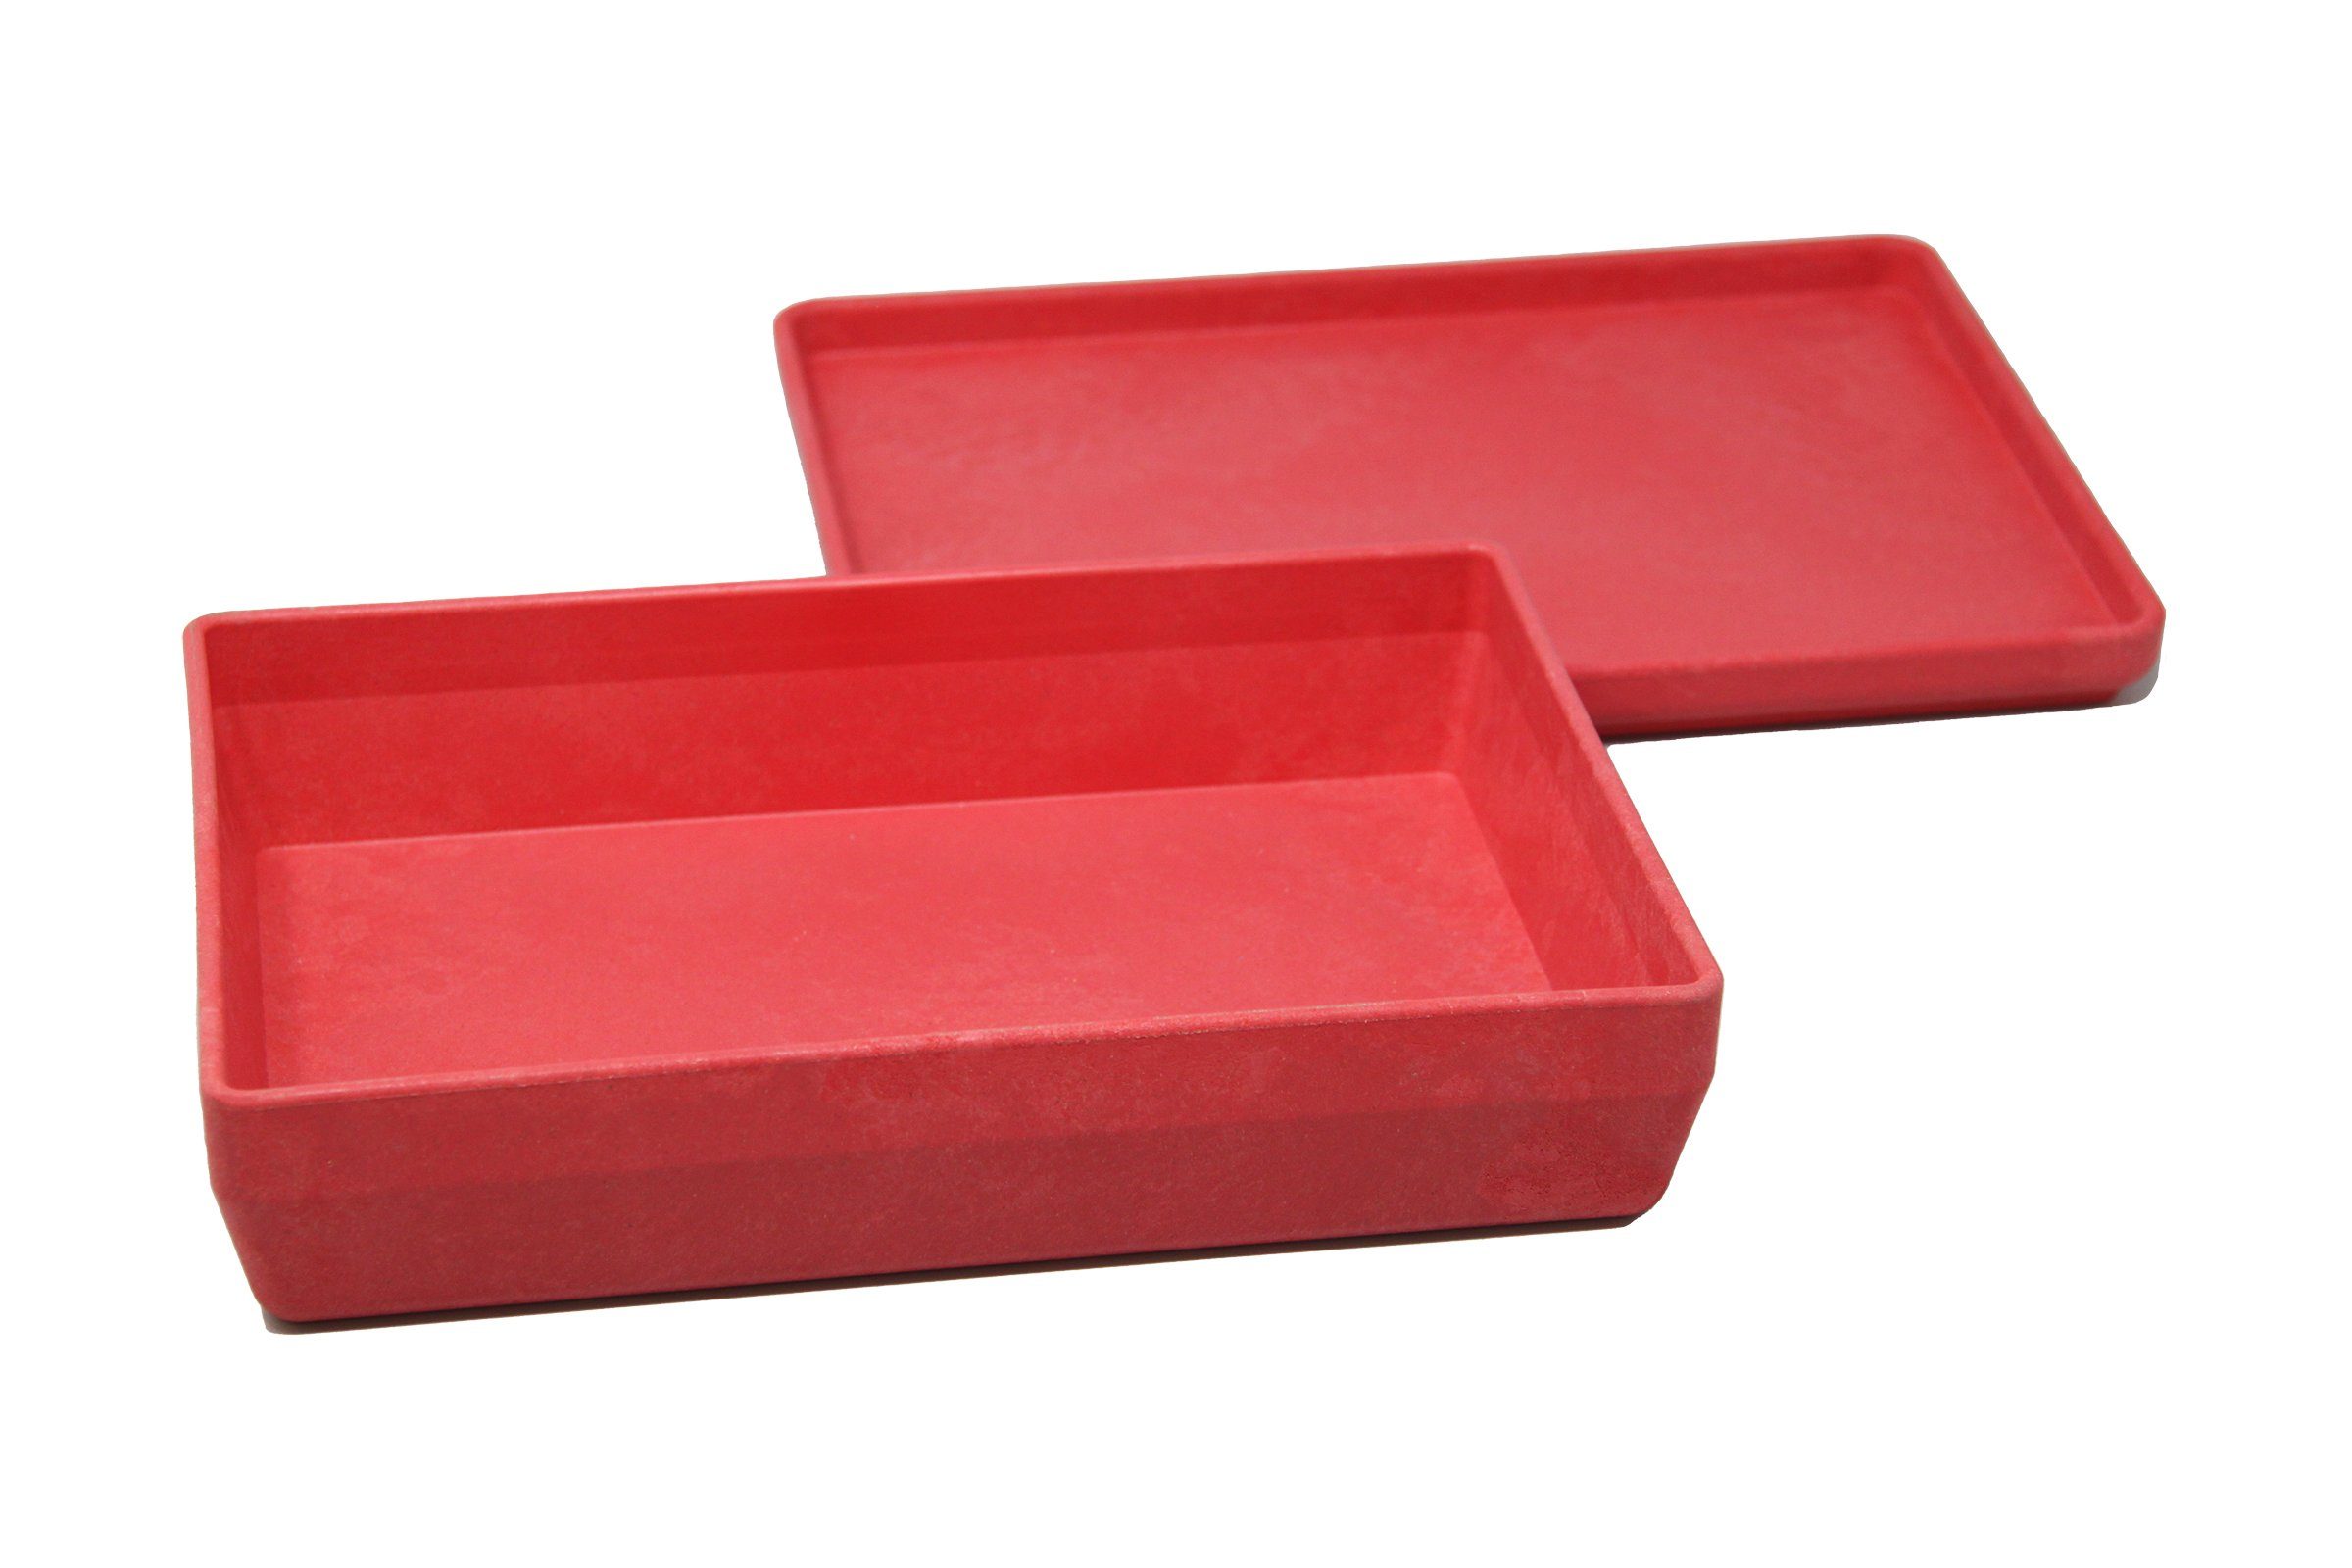 Wissner® aktiv lernen Aufbewahren in stapelbar versch. RE-Wood® Lernspielzeug Farben, Box Deckel rot mit